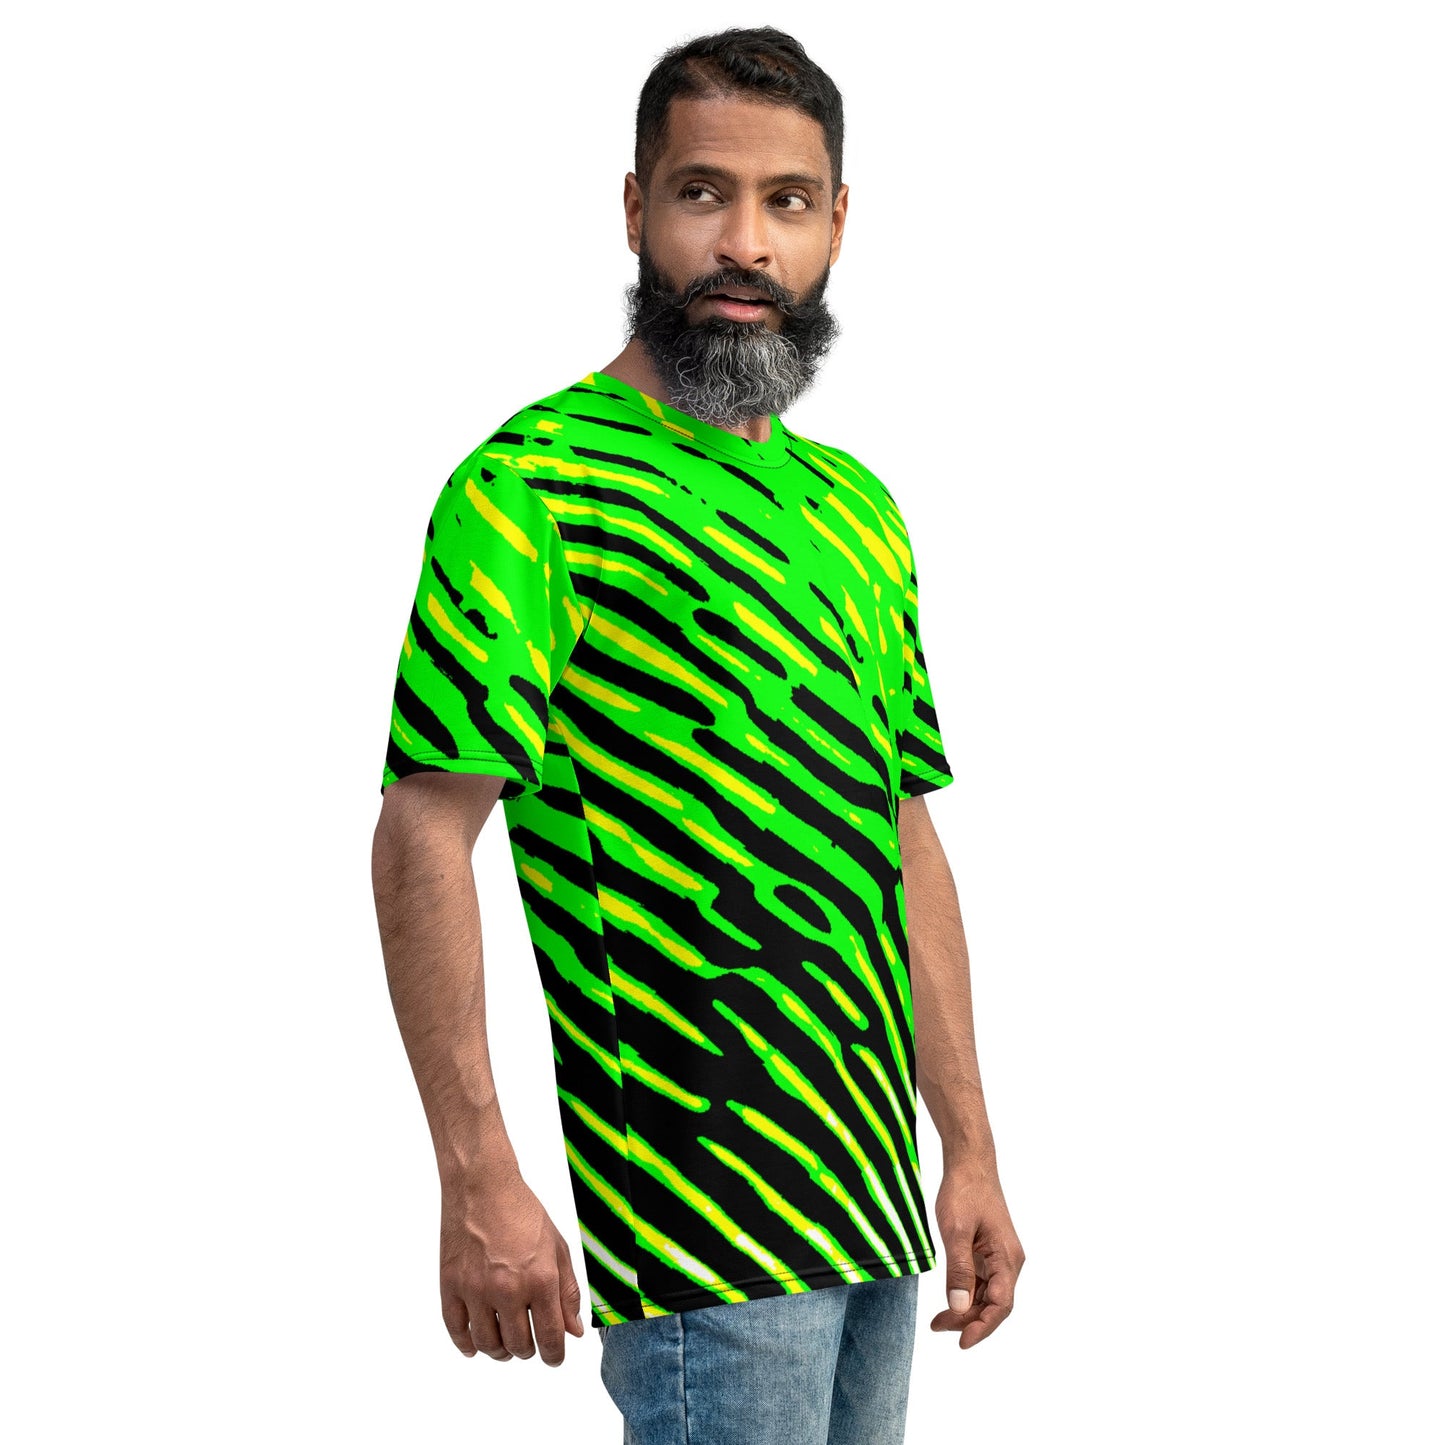 GreenS Men's t-shirt - Lizard Vigilante